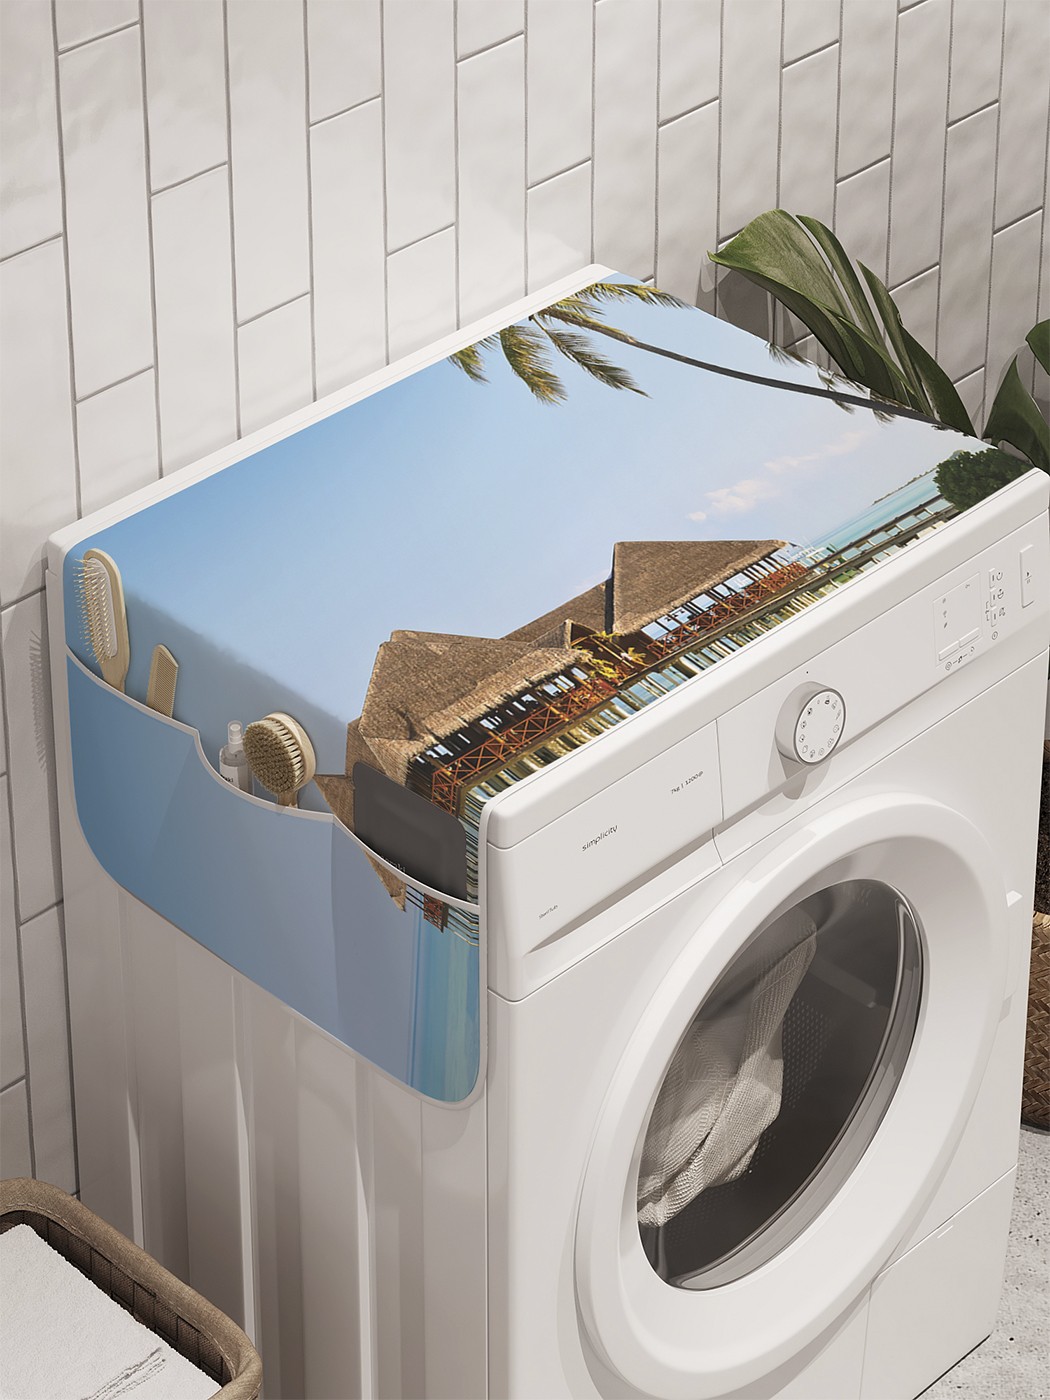 фото Органайзер "пляжные посиделки" на стиральную машину, 45x120 см ambesonne